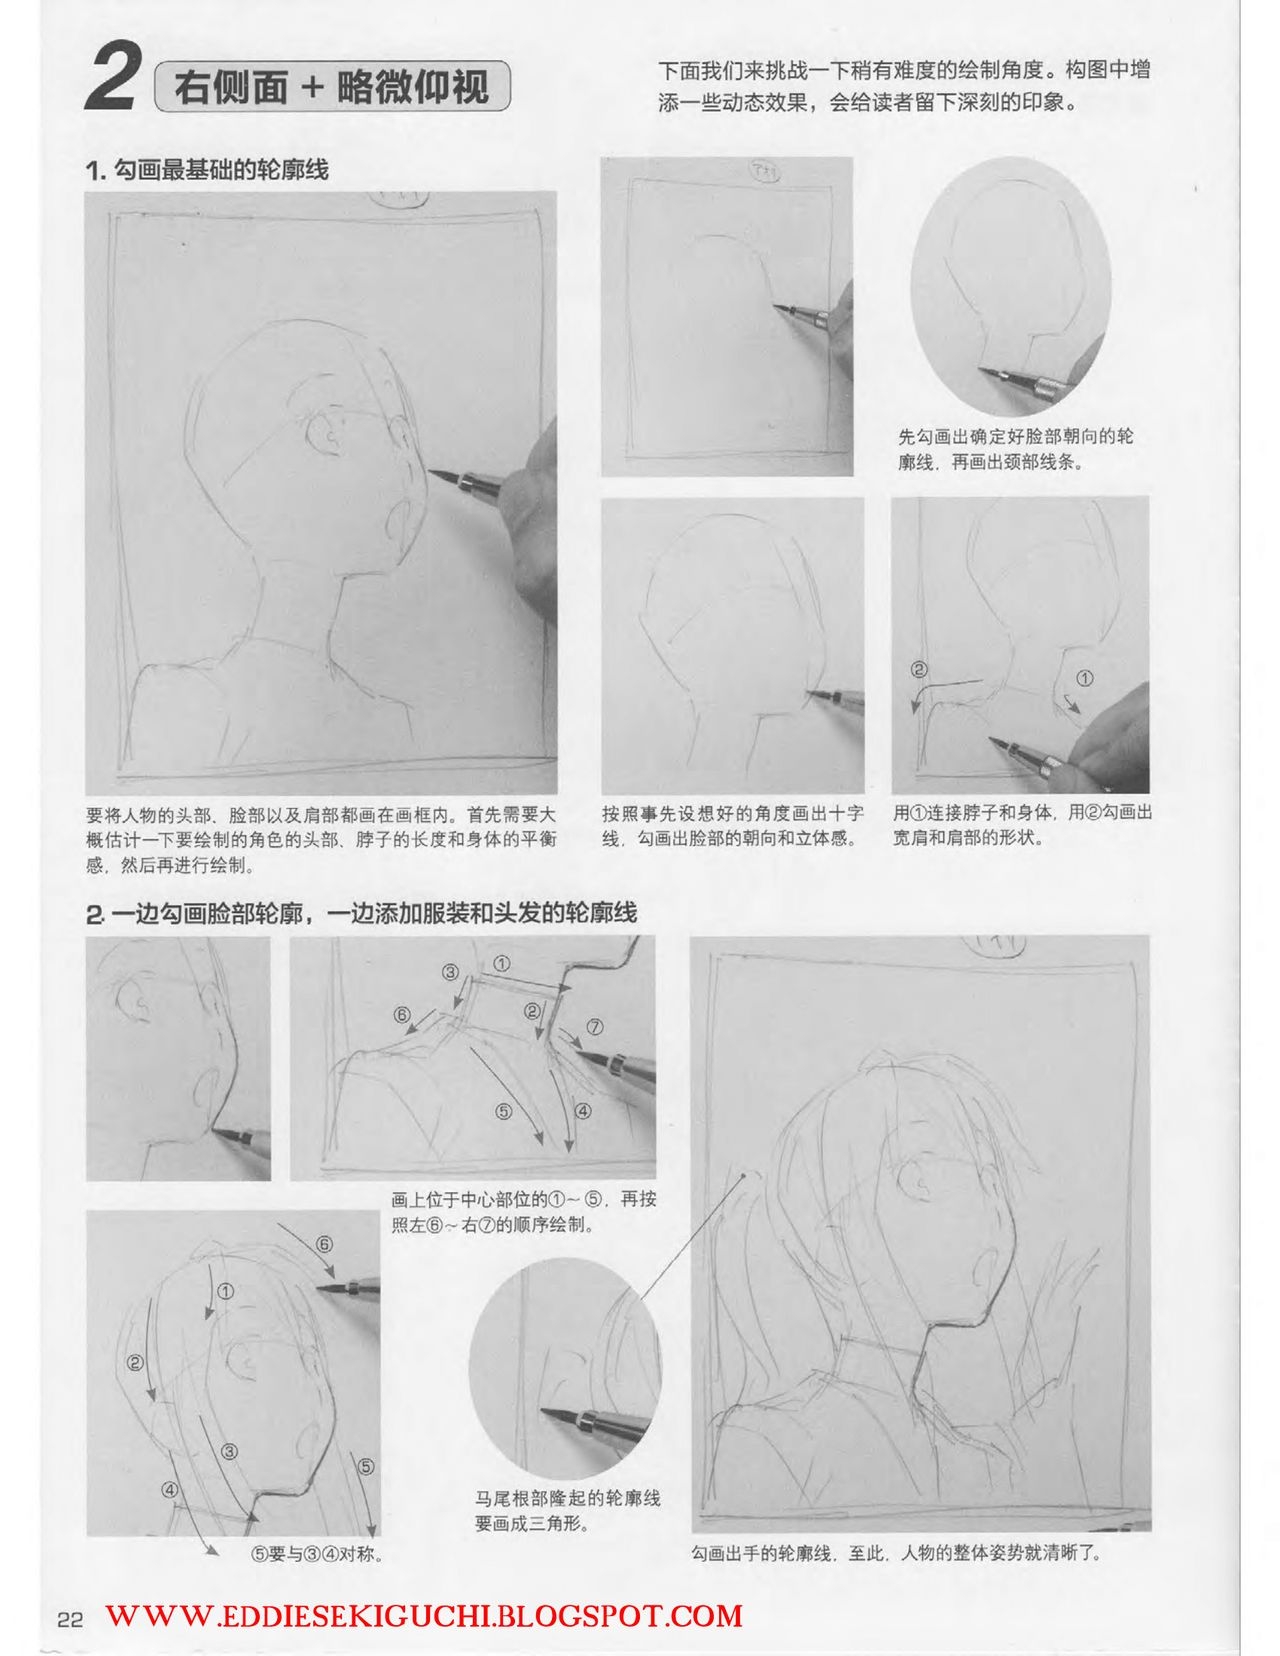 Japanese Manga Master Lecture 3: Lin Akira and Kakumaru Maru Talk About Glamorous Character Modeling 22